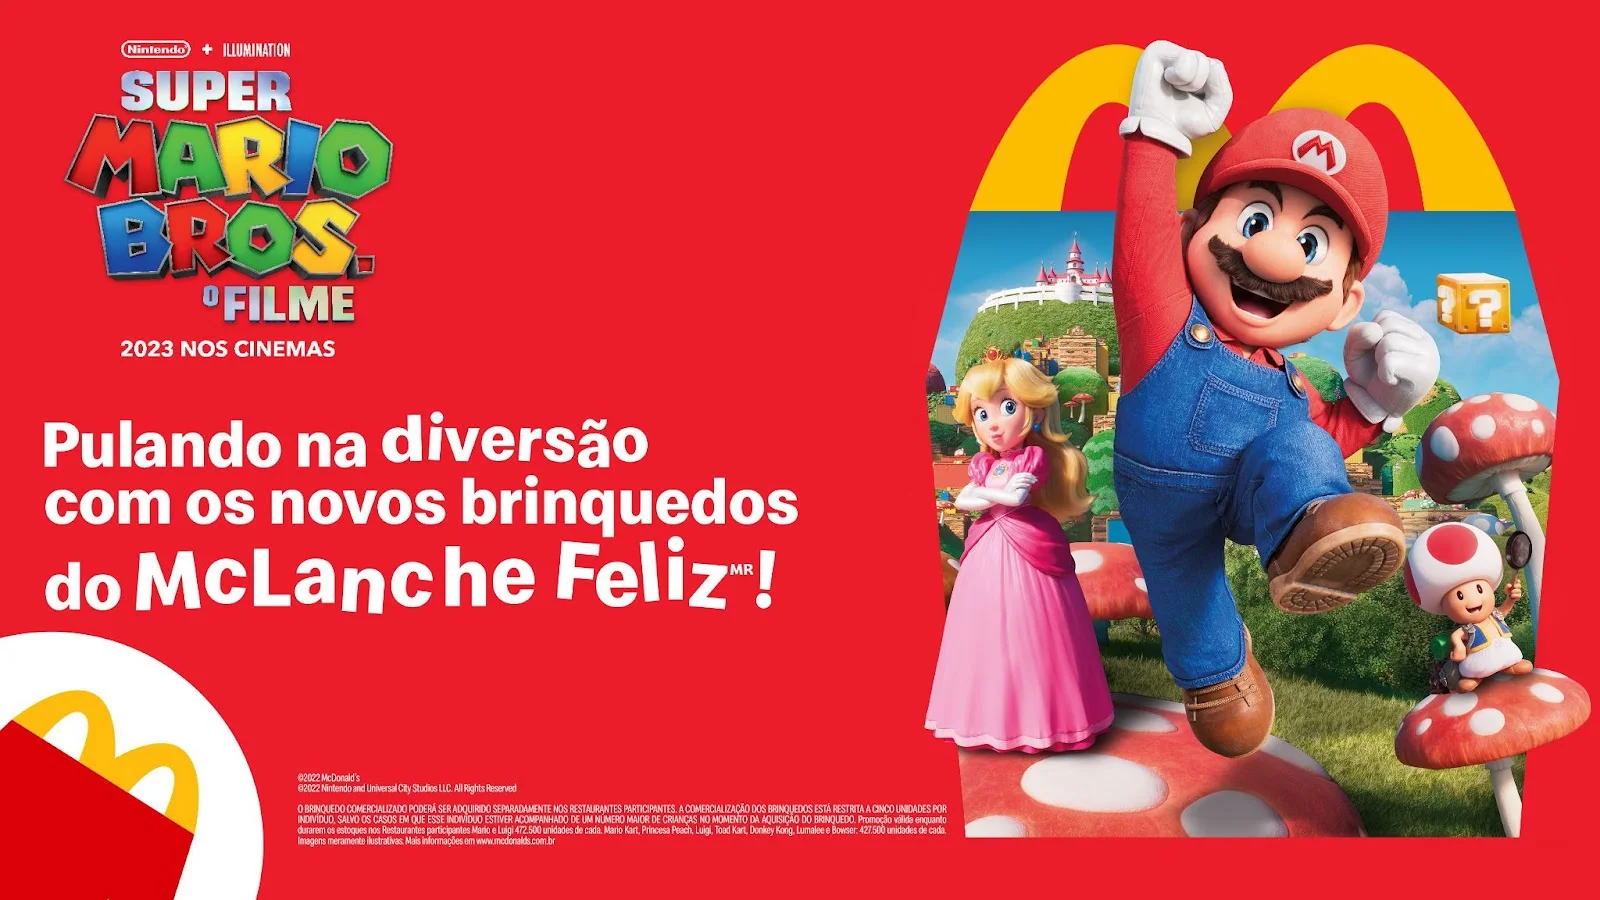 Lançamento físico do filme Super Mario Bros. chega à América do